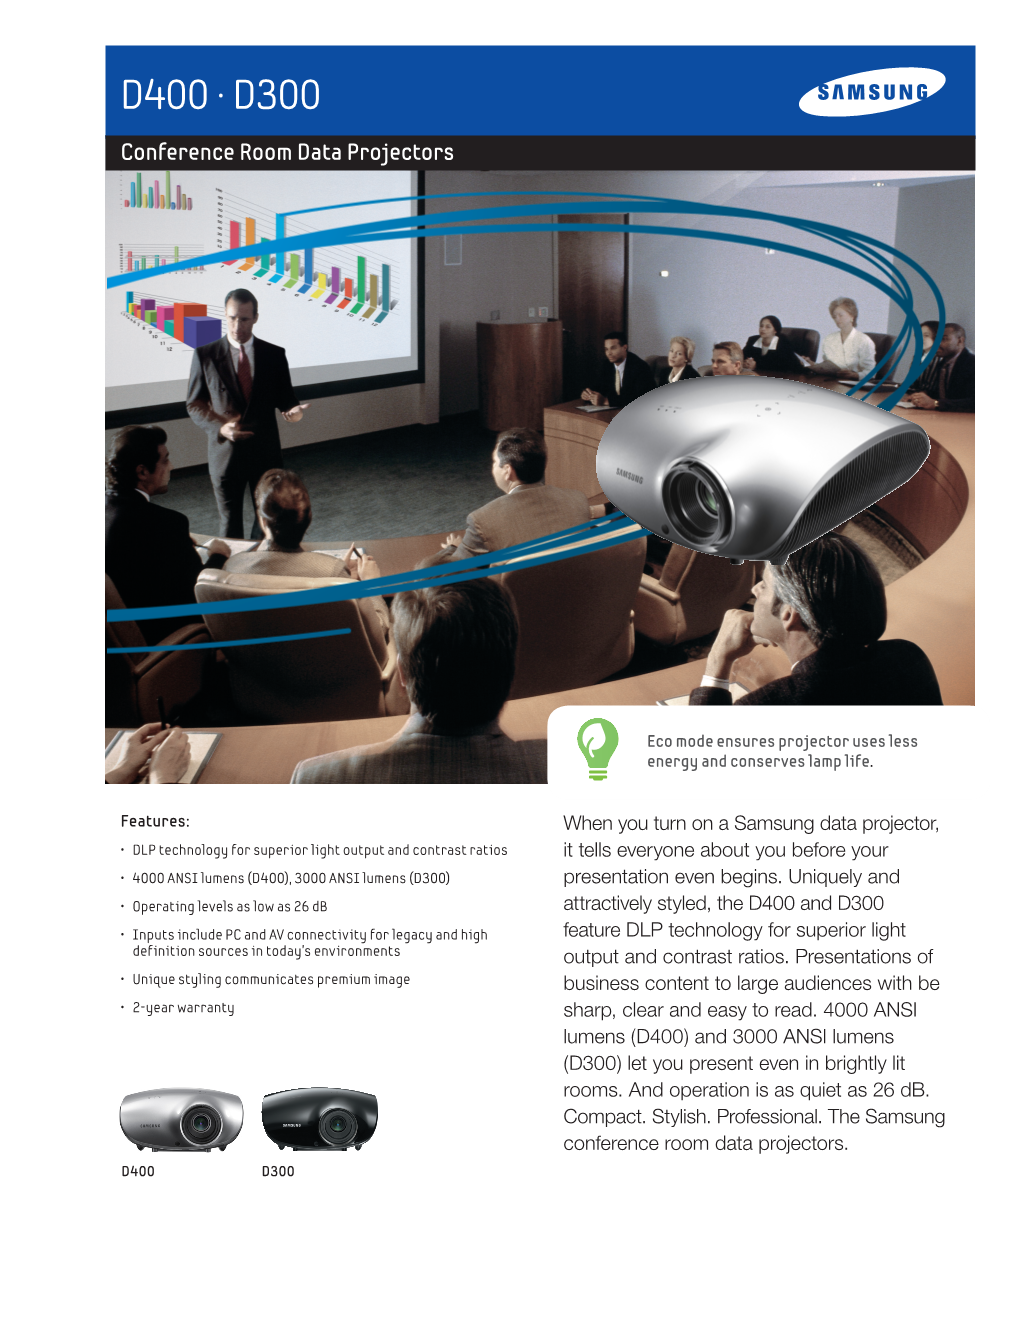 D400 • D300 Conference Room Data Projectors